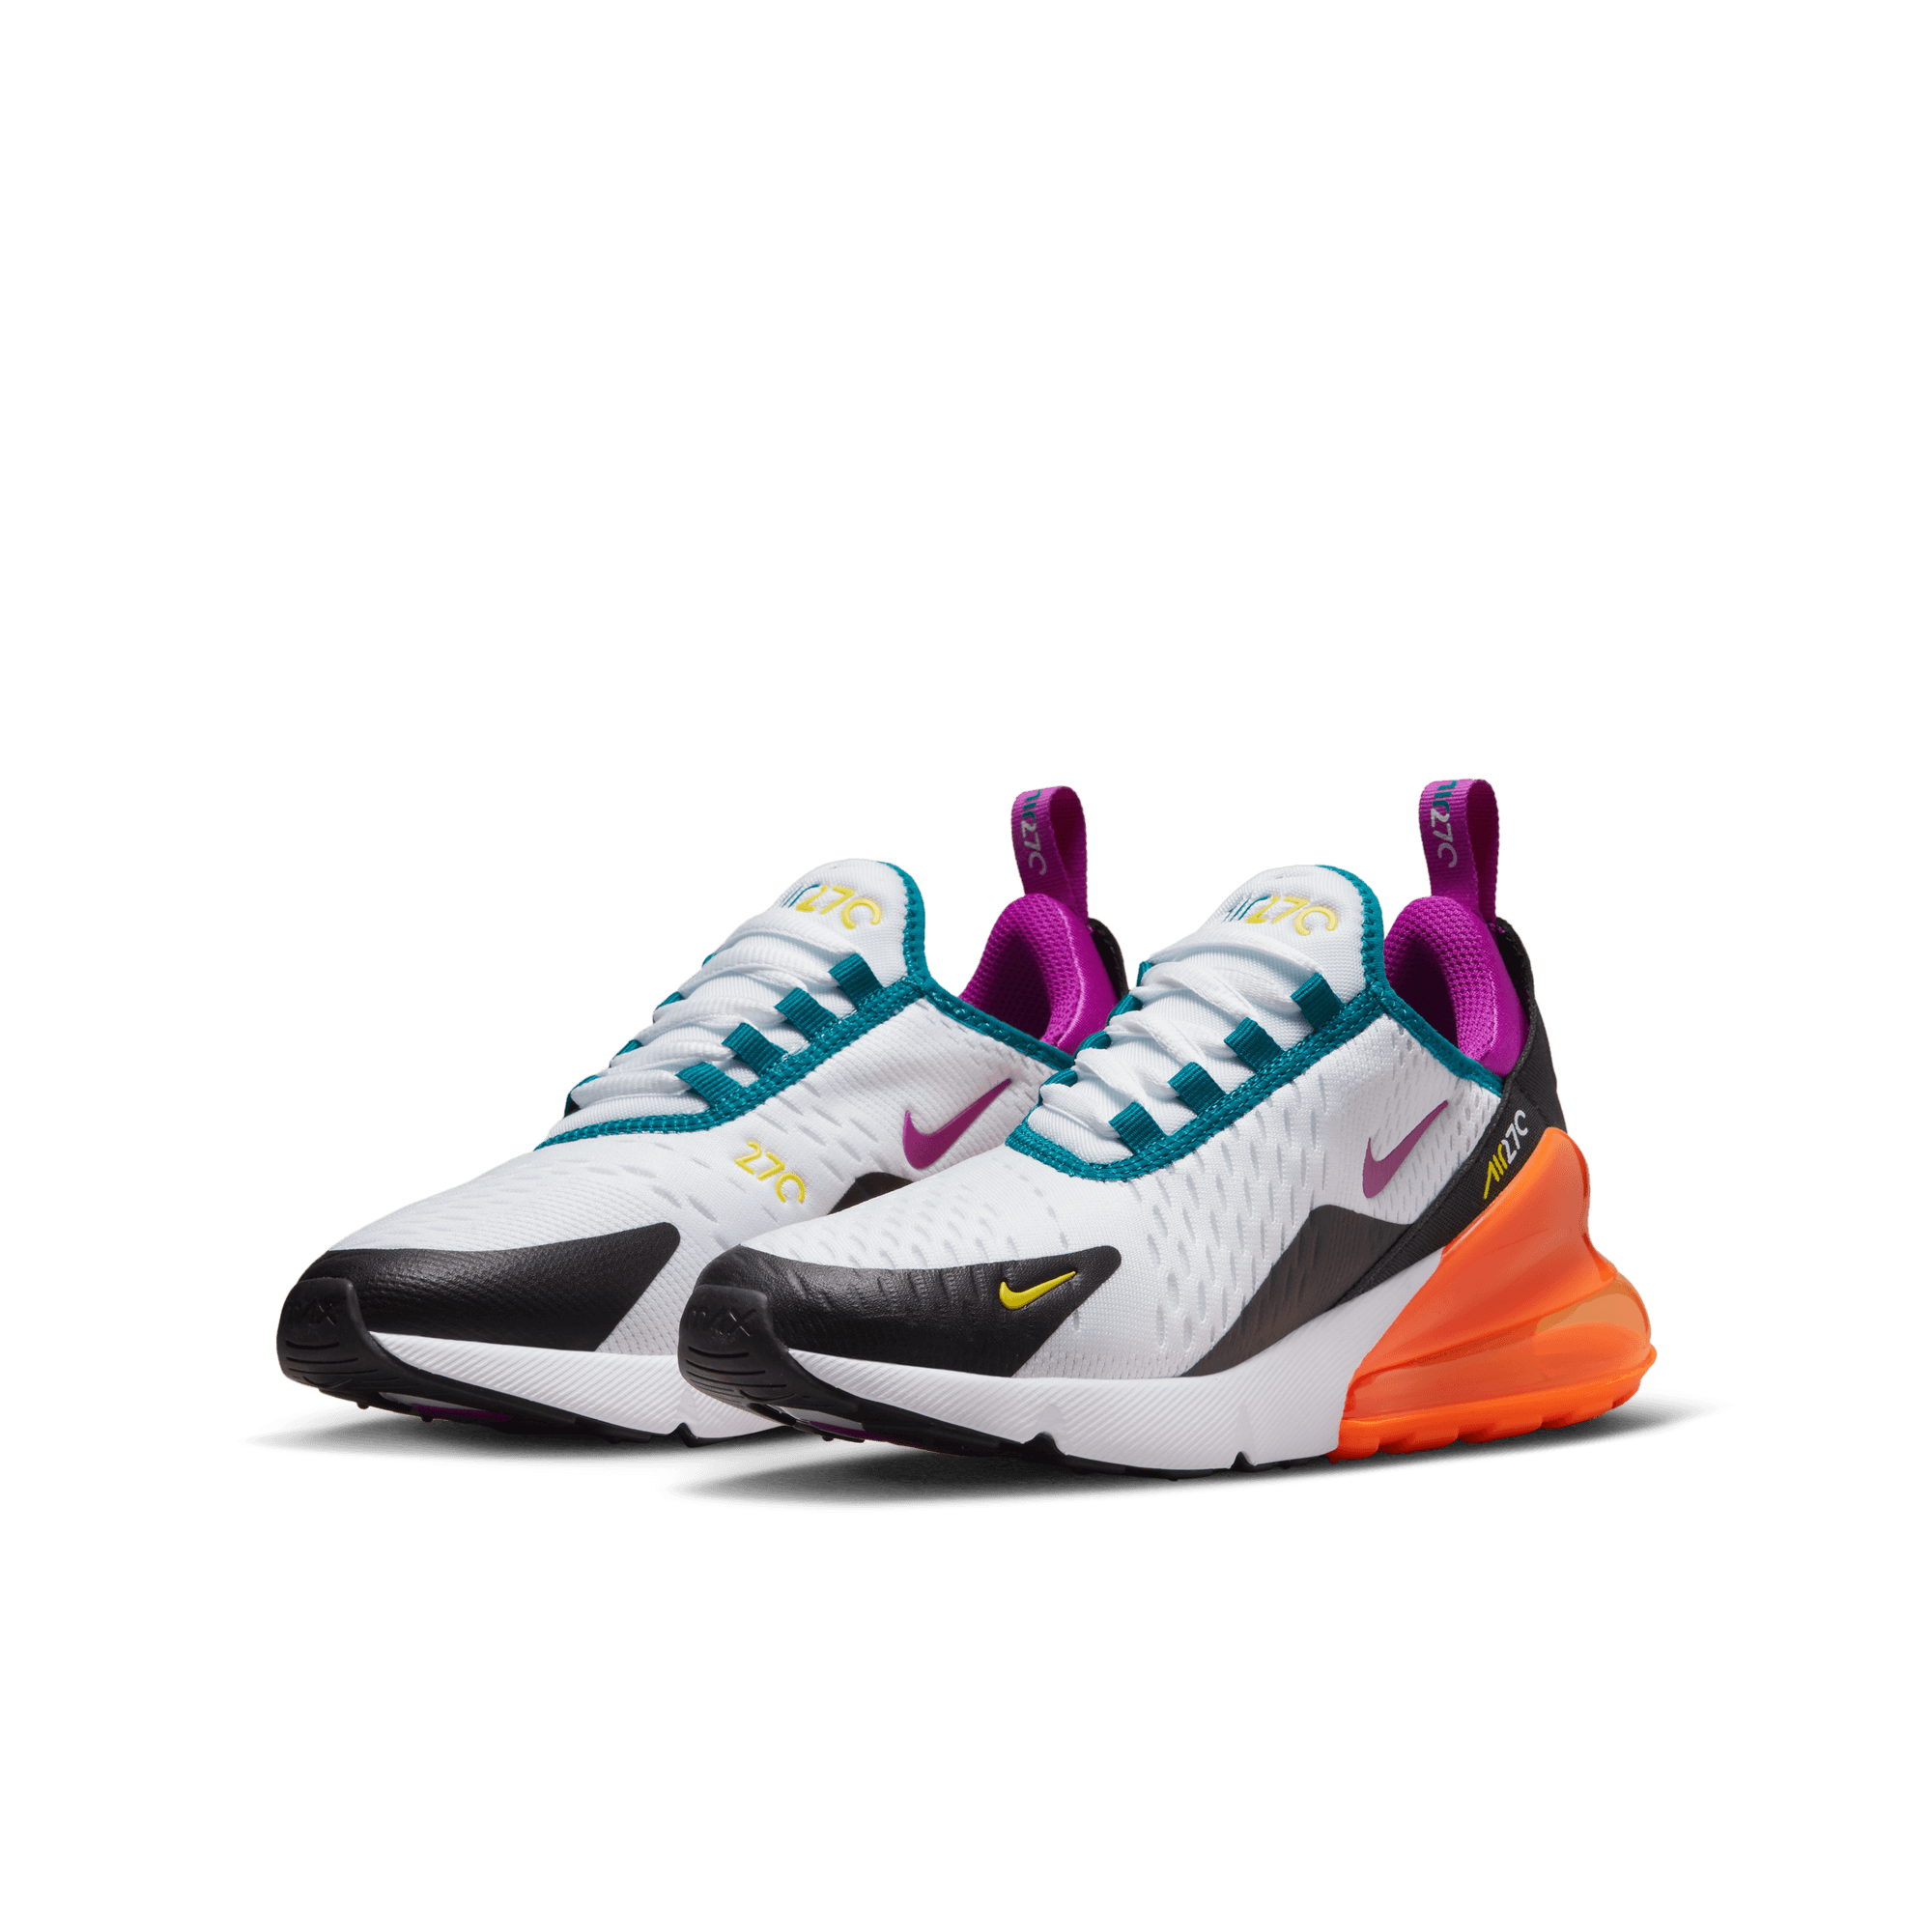 Nike Air Max 270 GS Basketball Shoes